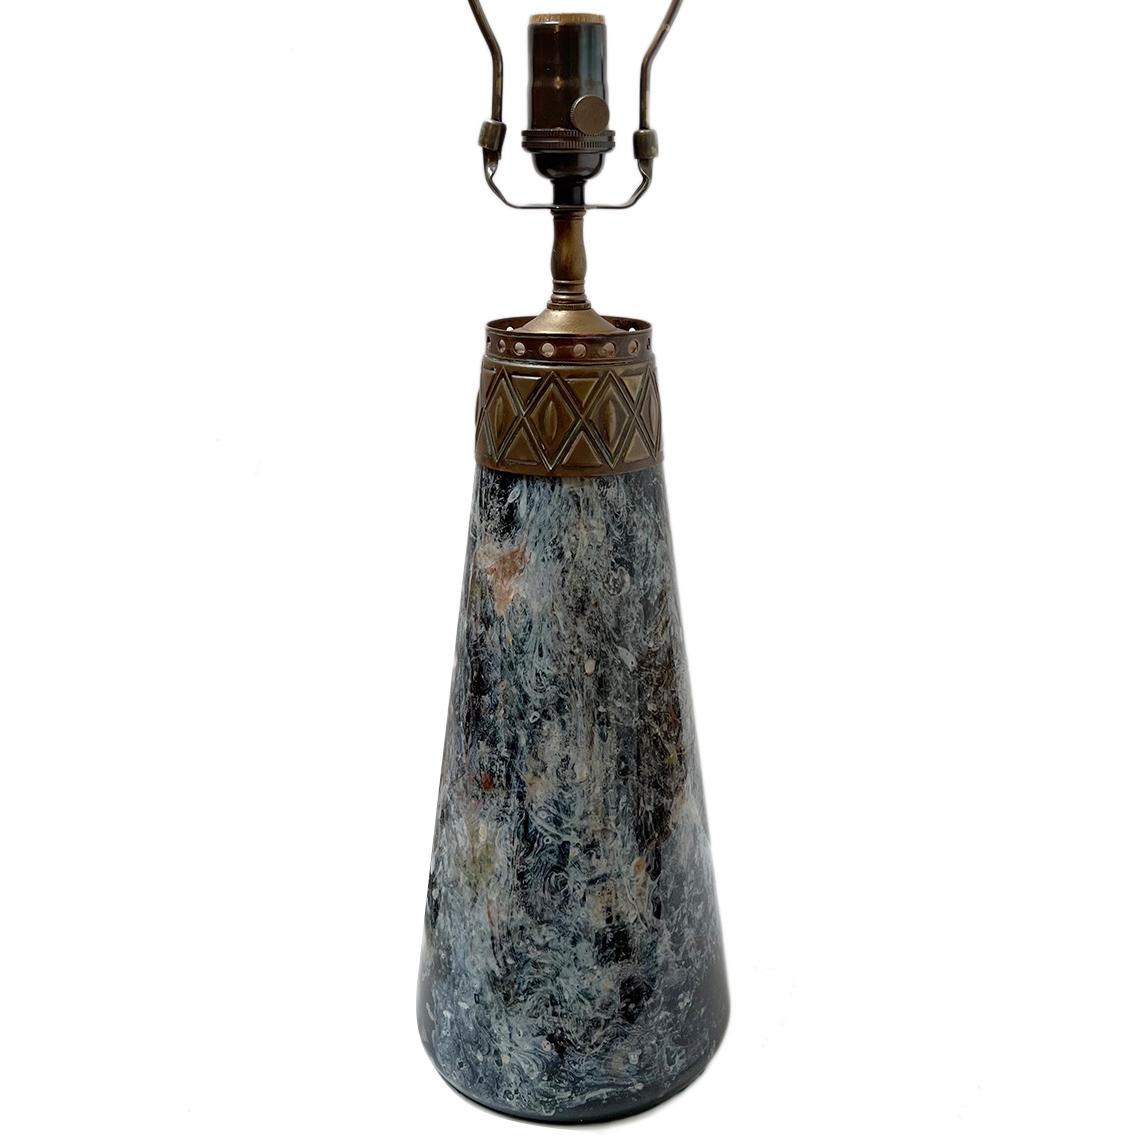 Lampe à huile en verre d'art français vers 1900 convertie à l'électricité avec des détails en bronze.

Mesures :
Hauteur du corps : 14.5